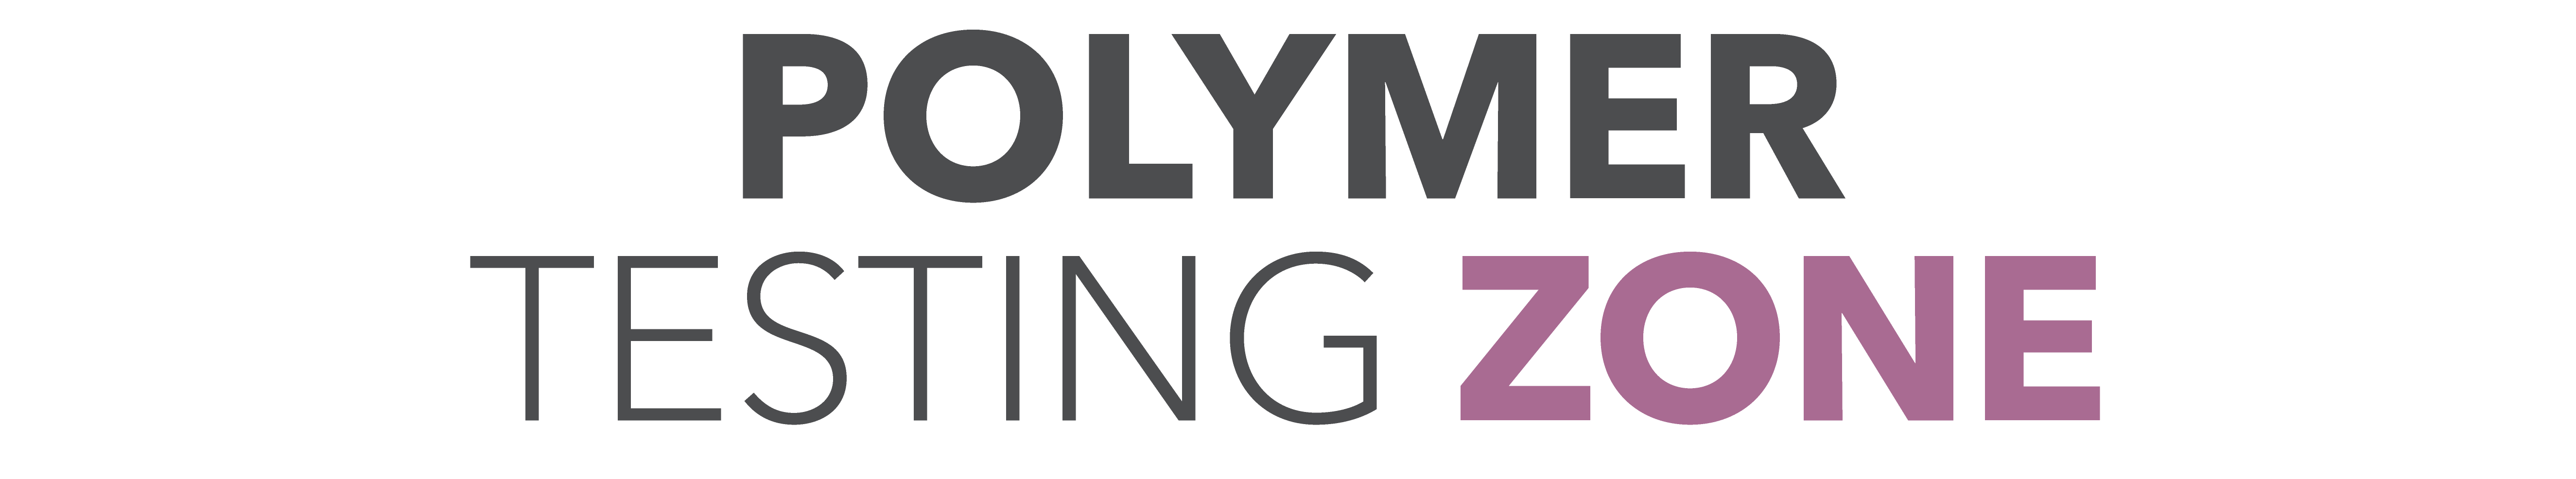 Polymer Testing Zone logo